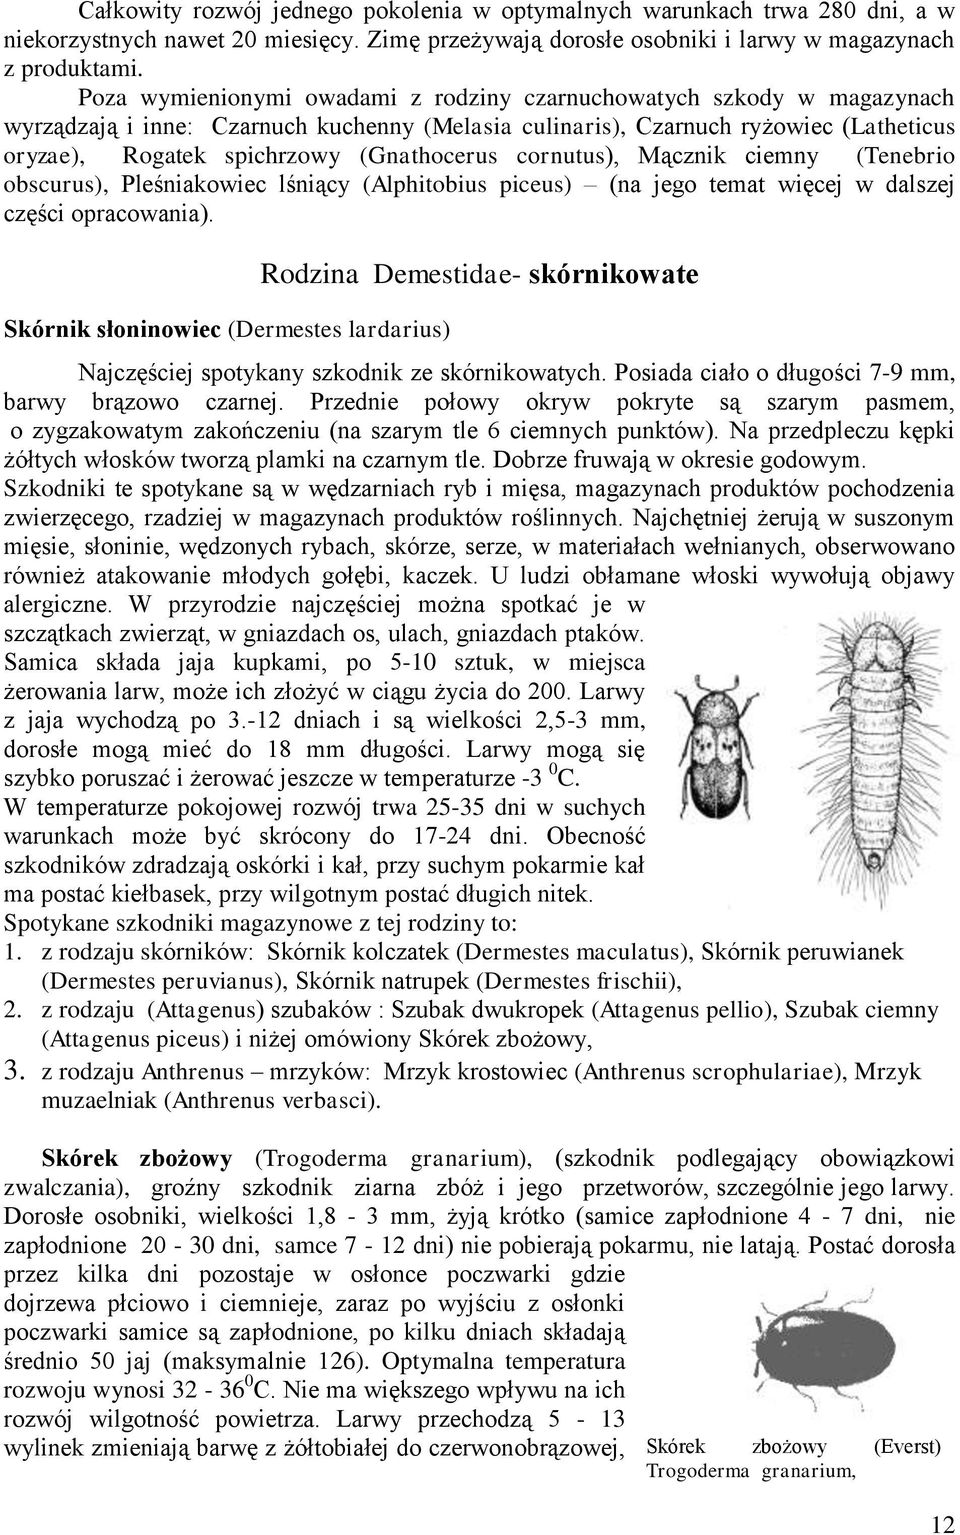 Mącznik ciemny (Tenebrio obscurus), Pleśniakowiec lśniący (Alphitobius piceus) (na jego temat więcej w dalszej części opracowania) Skórnik słoninowiec (Dermestes lardarius) Rodzina Demestidae-